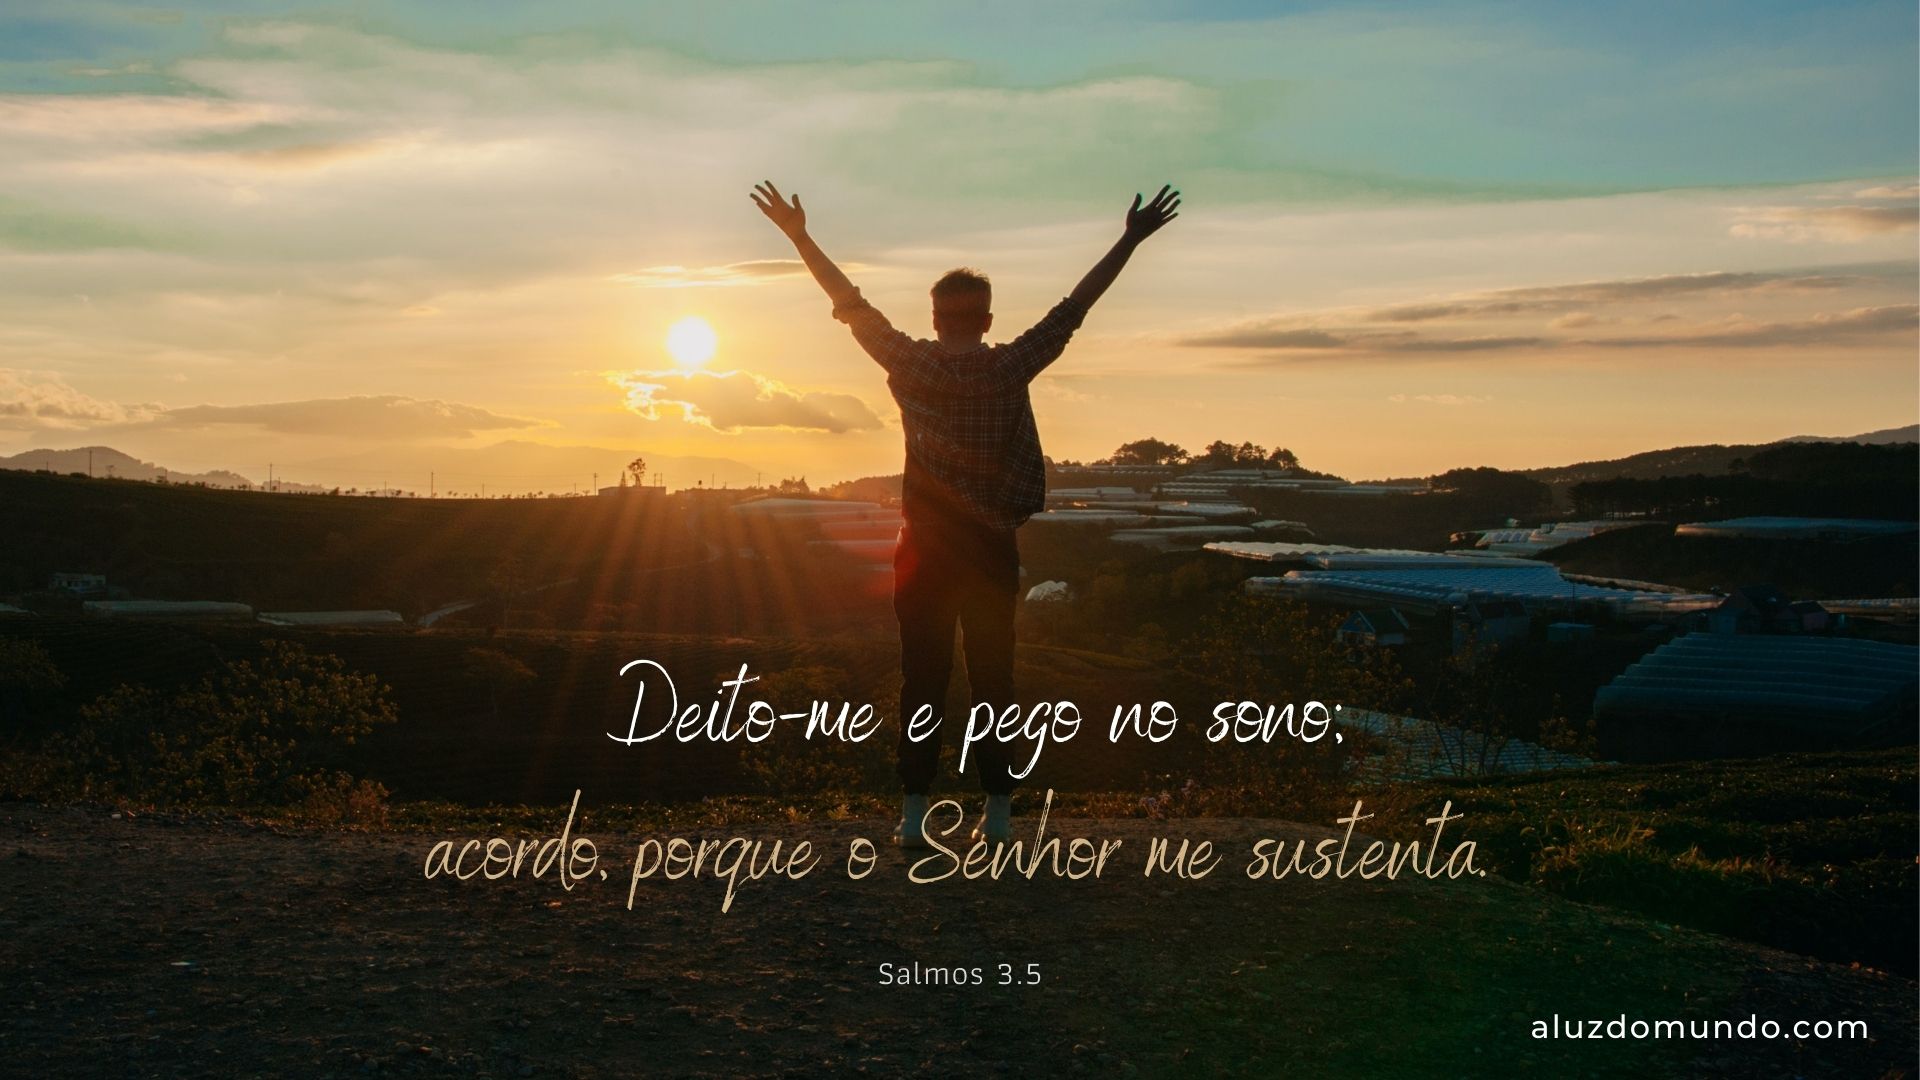 Salmos 3.5